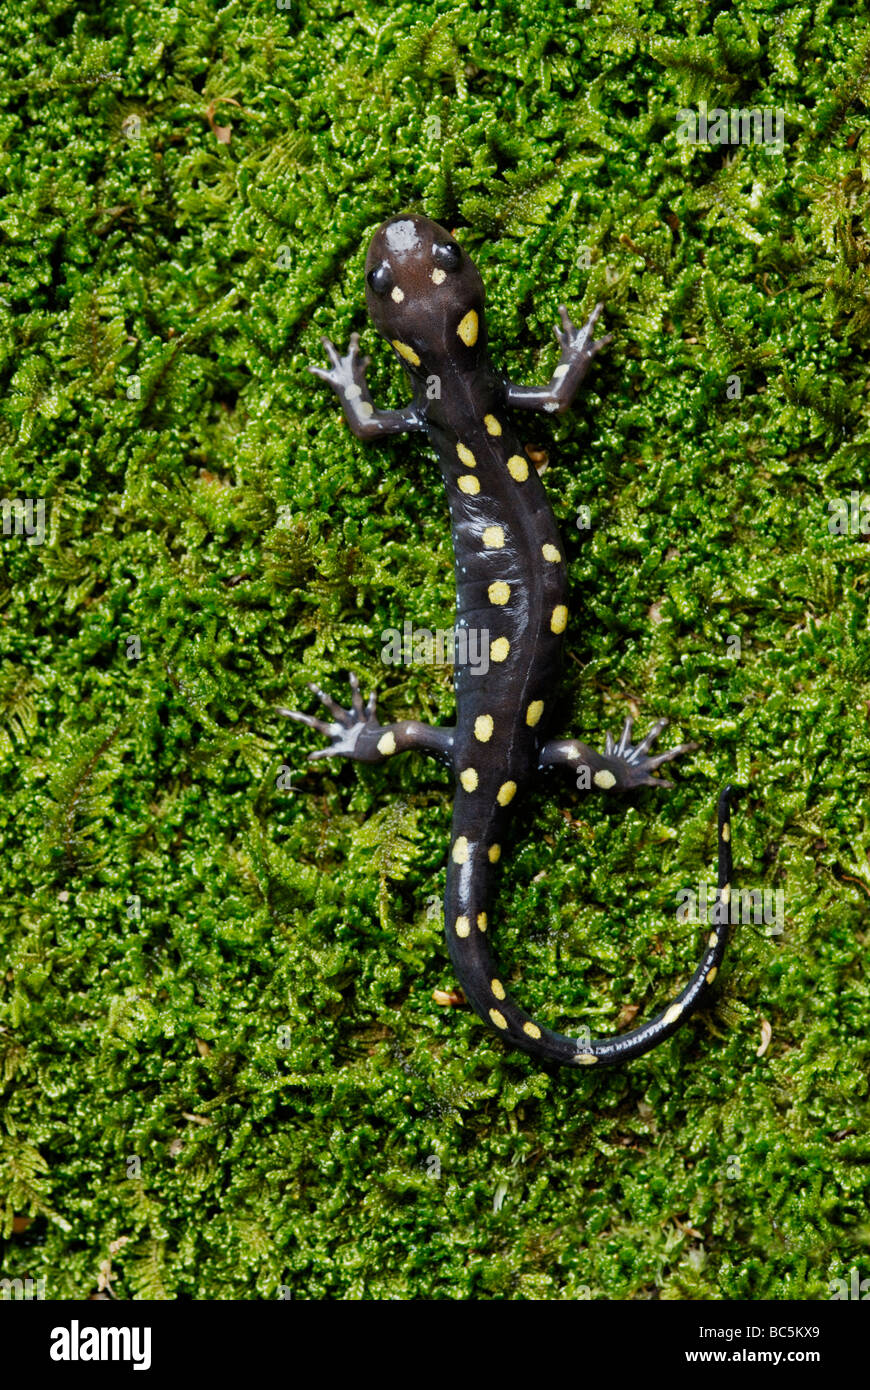 Spotted salamander, Ambystoma maculatum, on moss Stock Photo